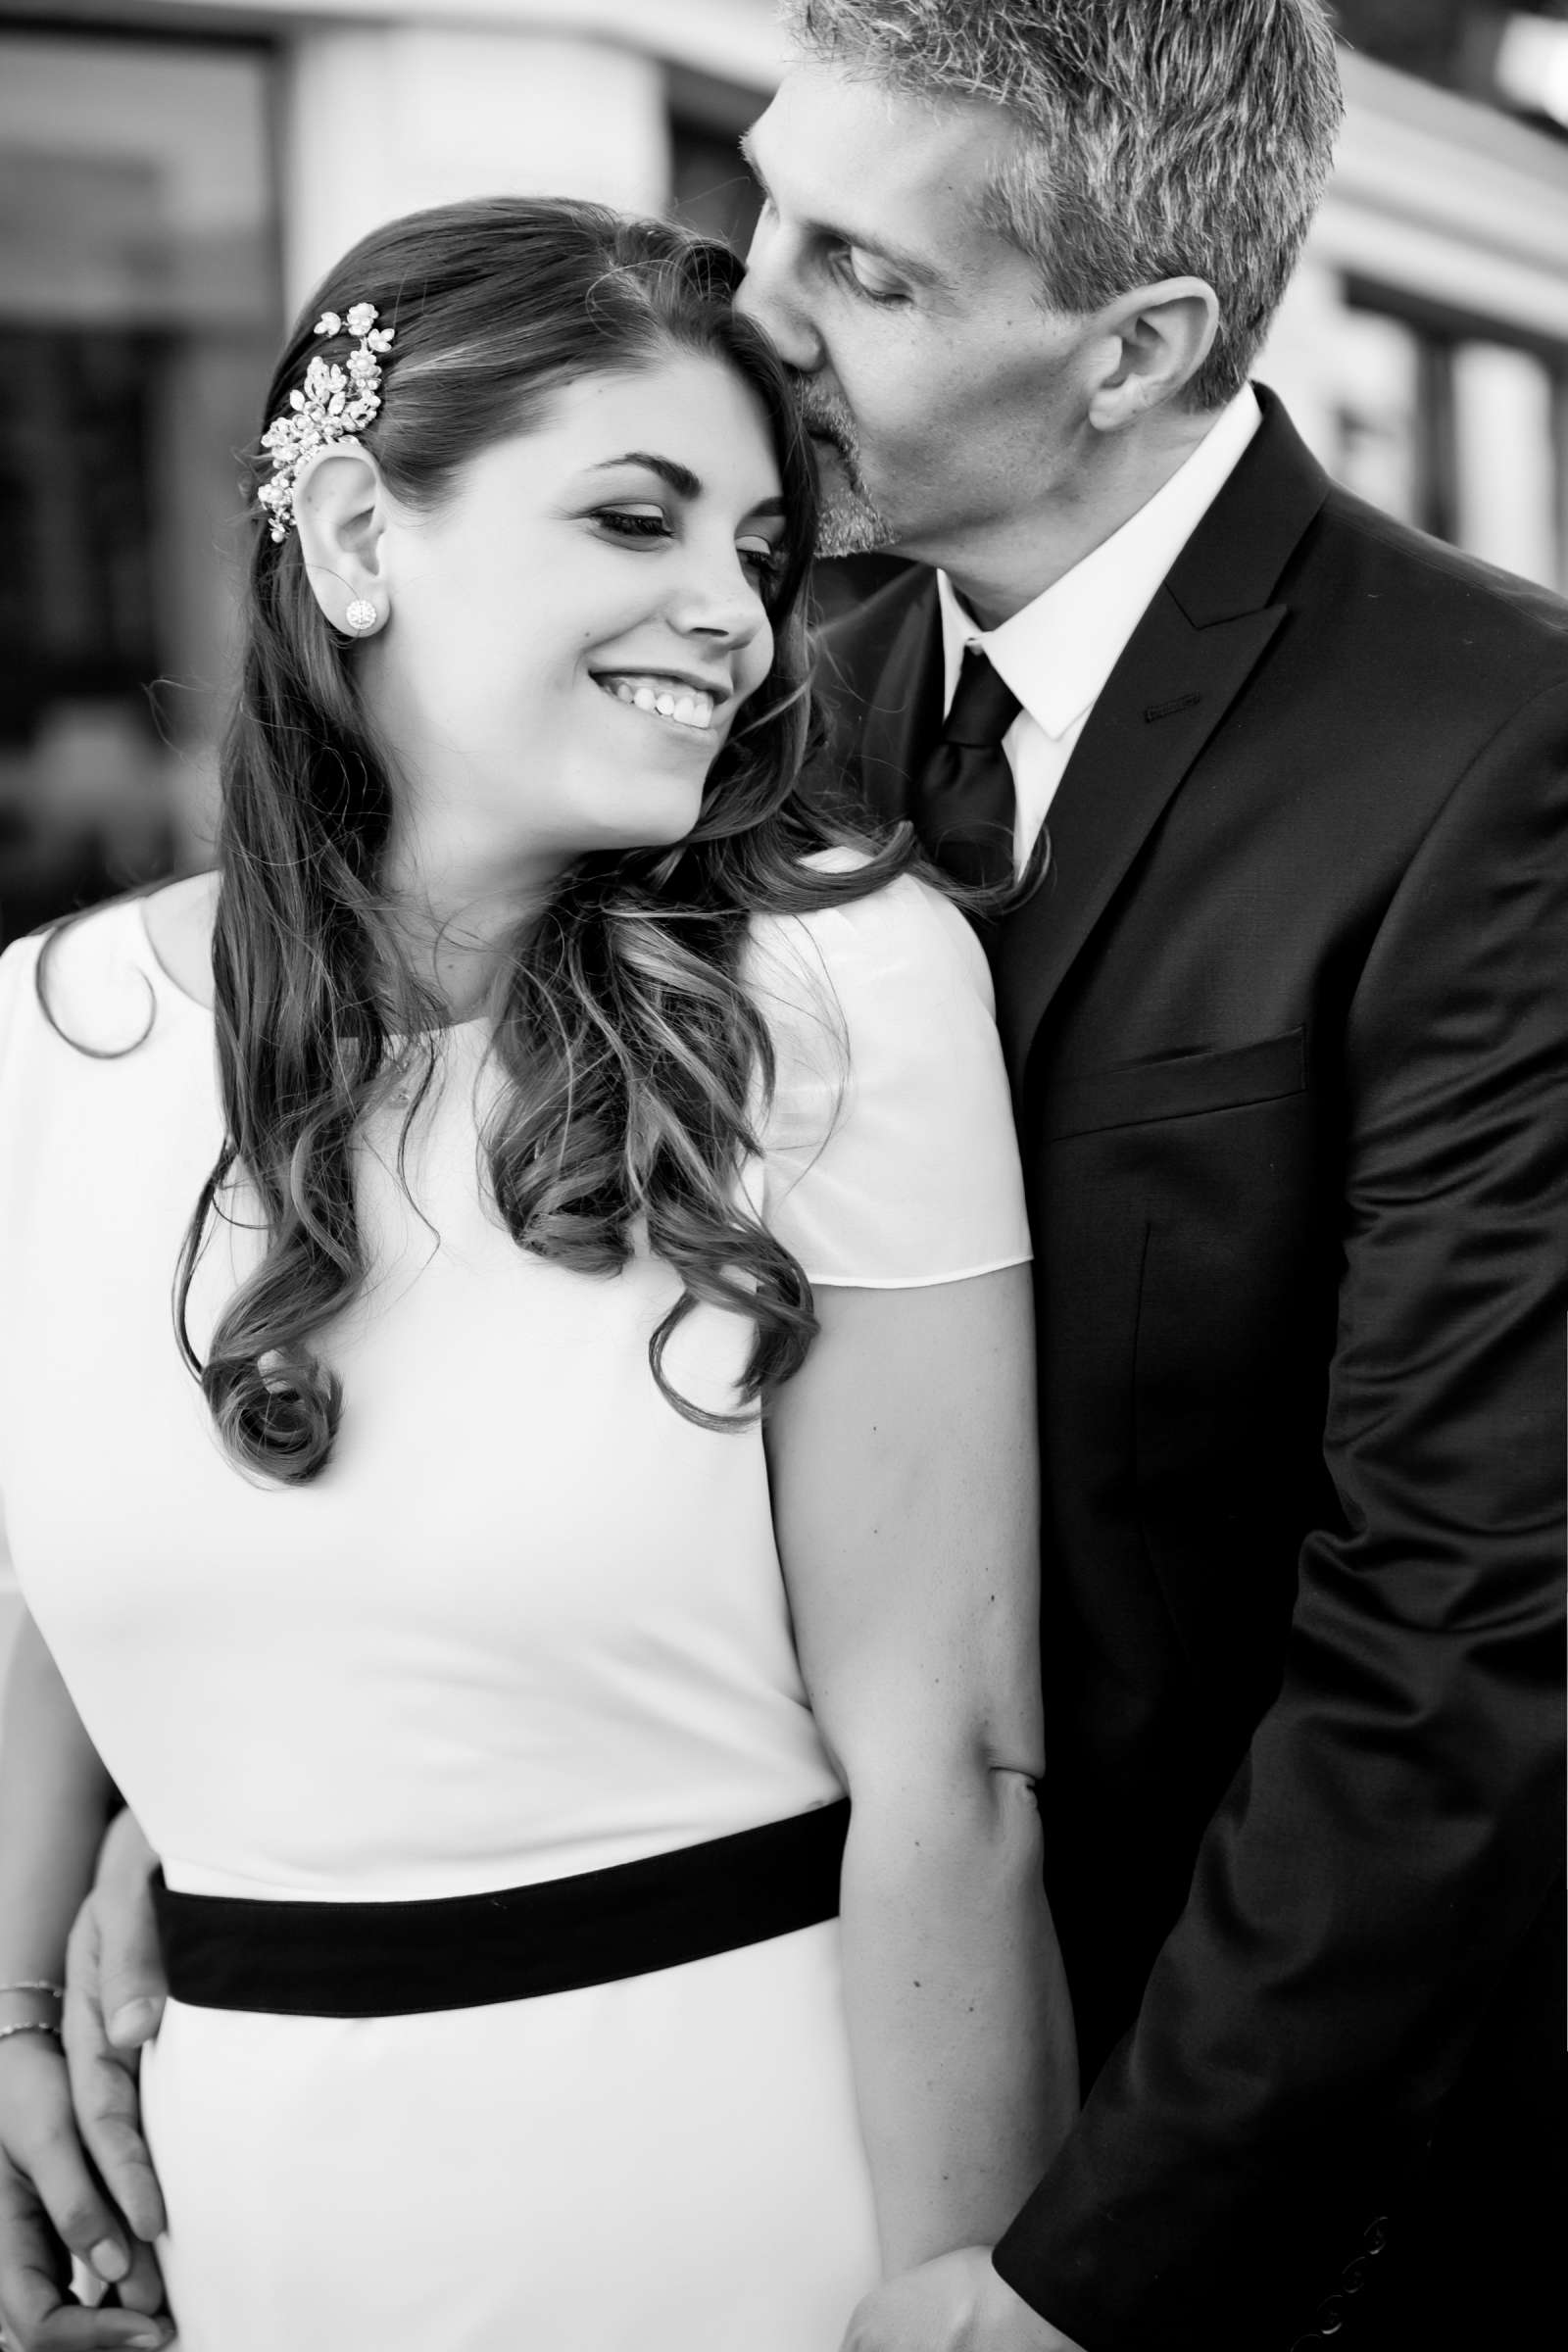 Hotel Del Coronado Wedding, Melis and Marc Wedding Photo #4 by True Photography